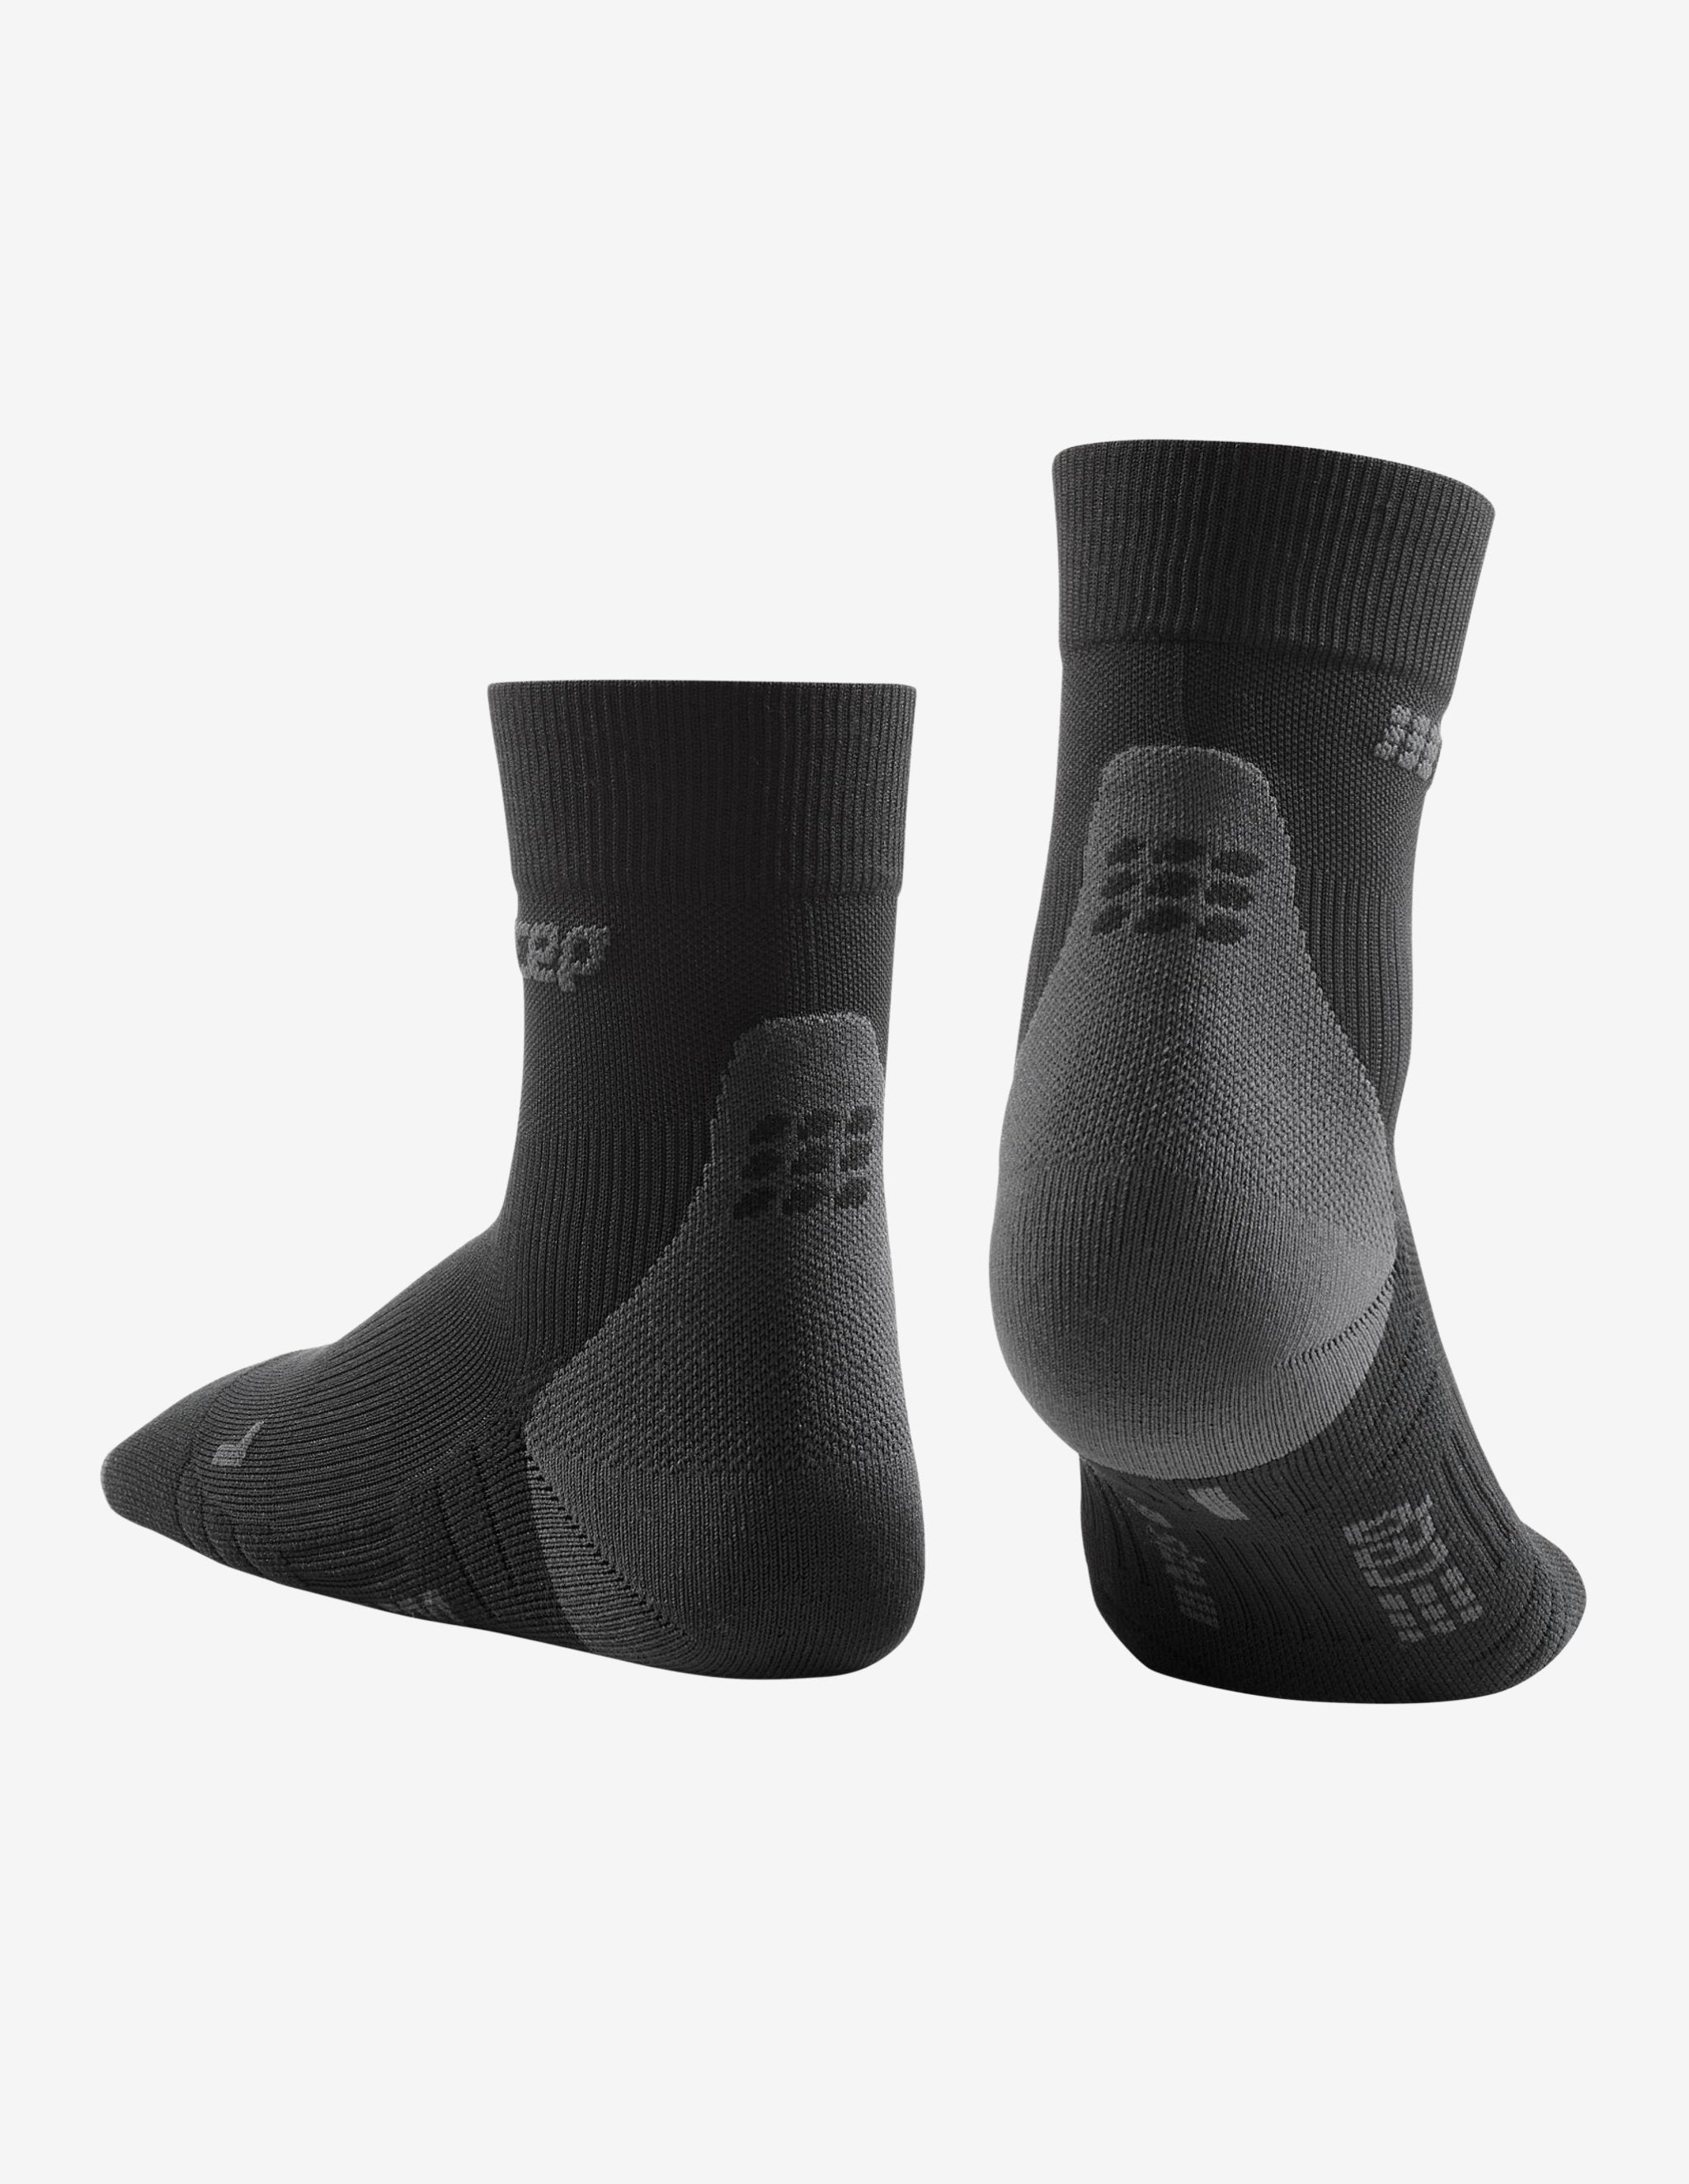 CEP Socks Short Cut 3.0 Black/Grey-Socks-CEP Compression-Guru Muscle